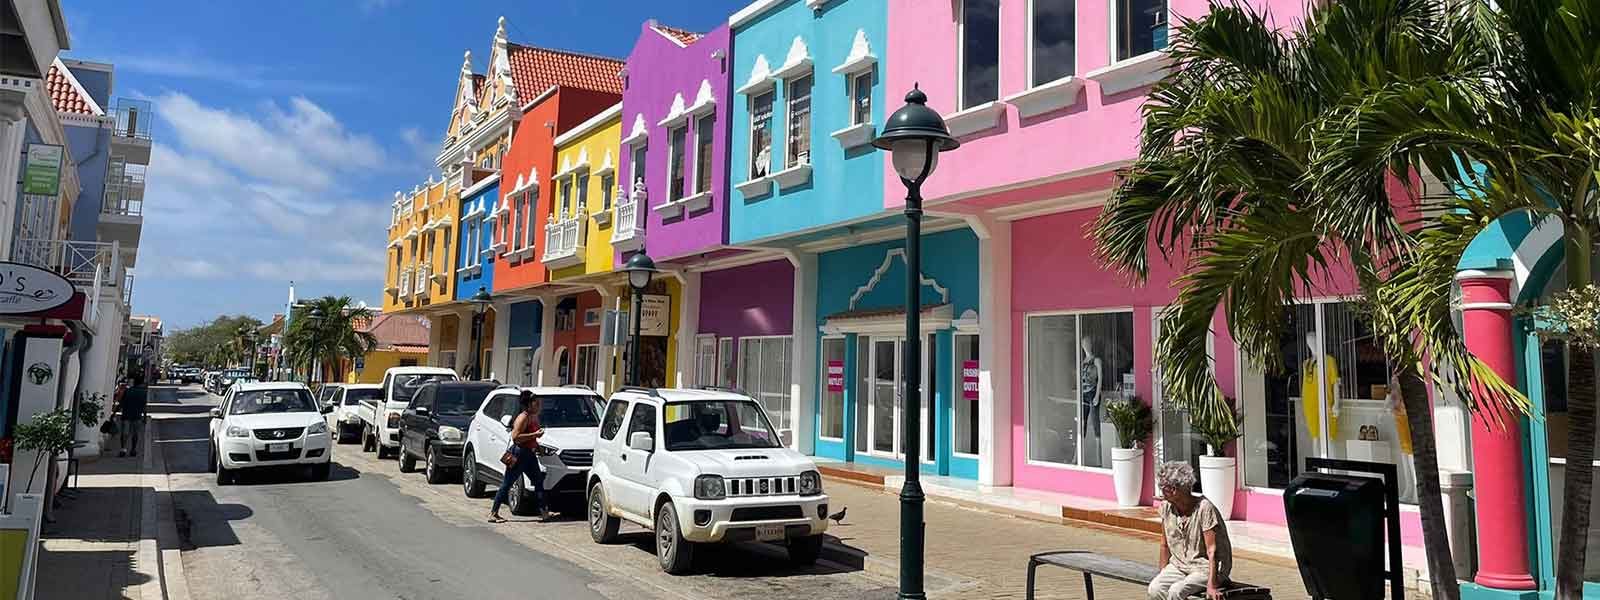 Straat in Kralendijk op Bonaire